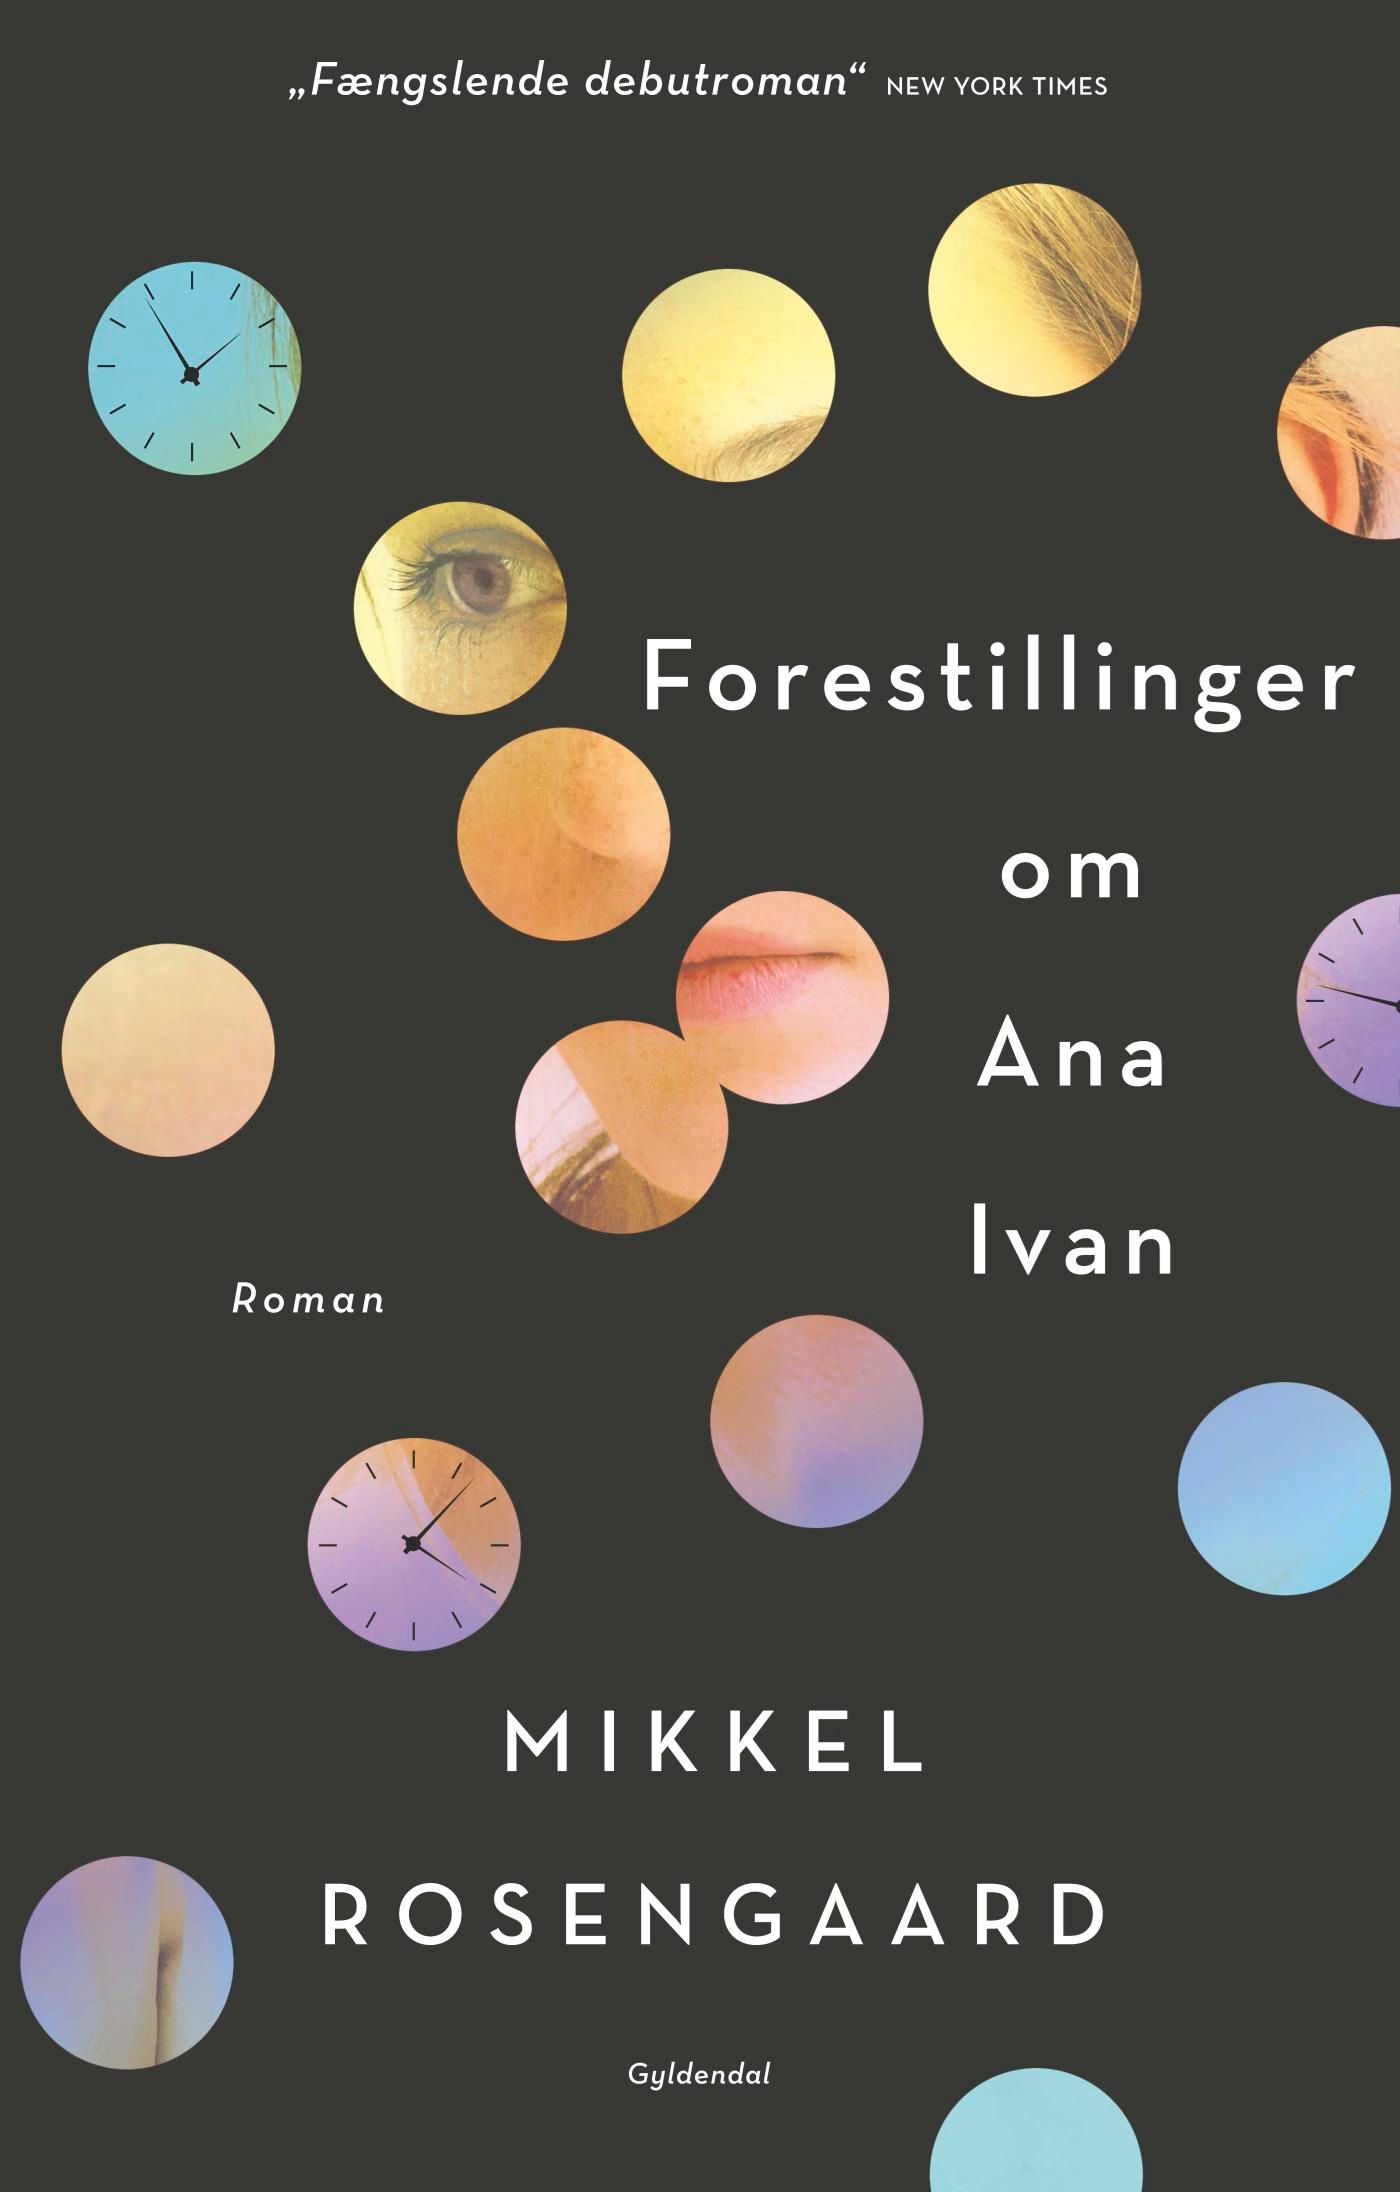 Forestillinger om Ana Ivan, e-bog af Mikkel Rosengaard